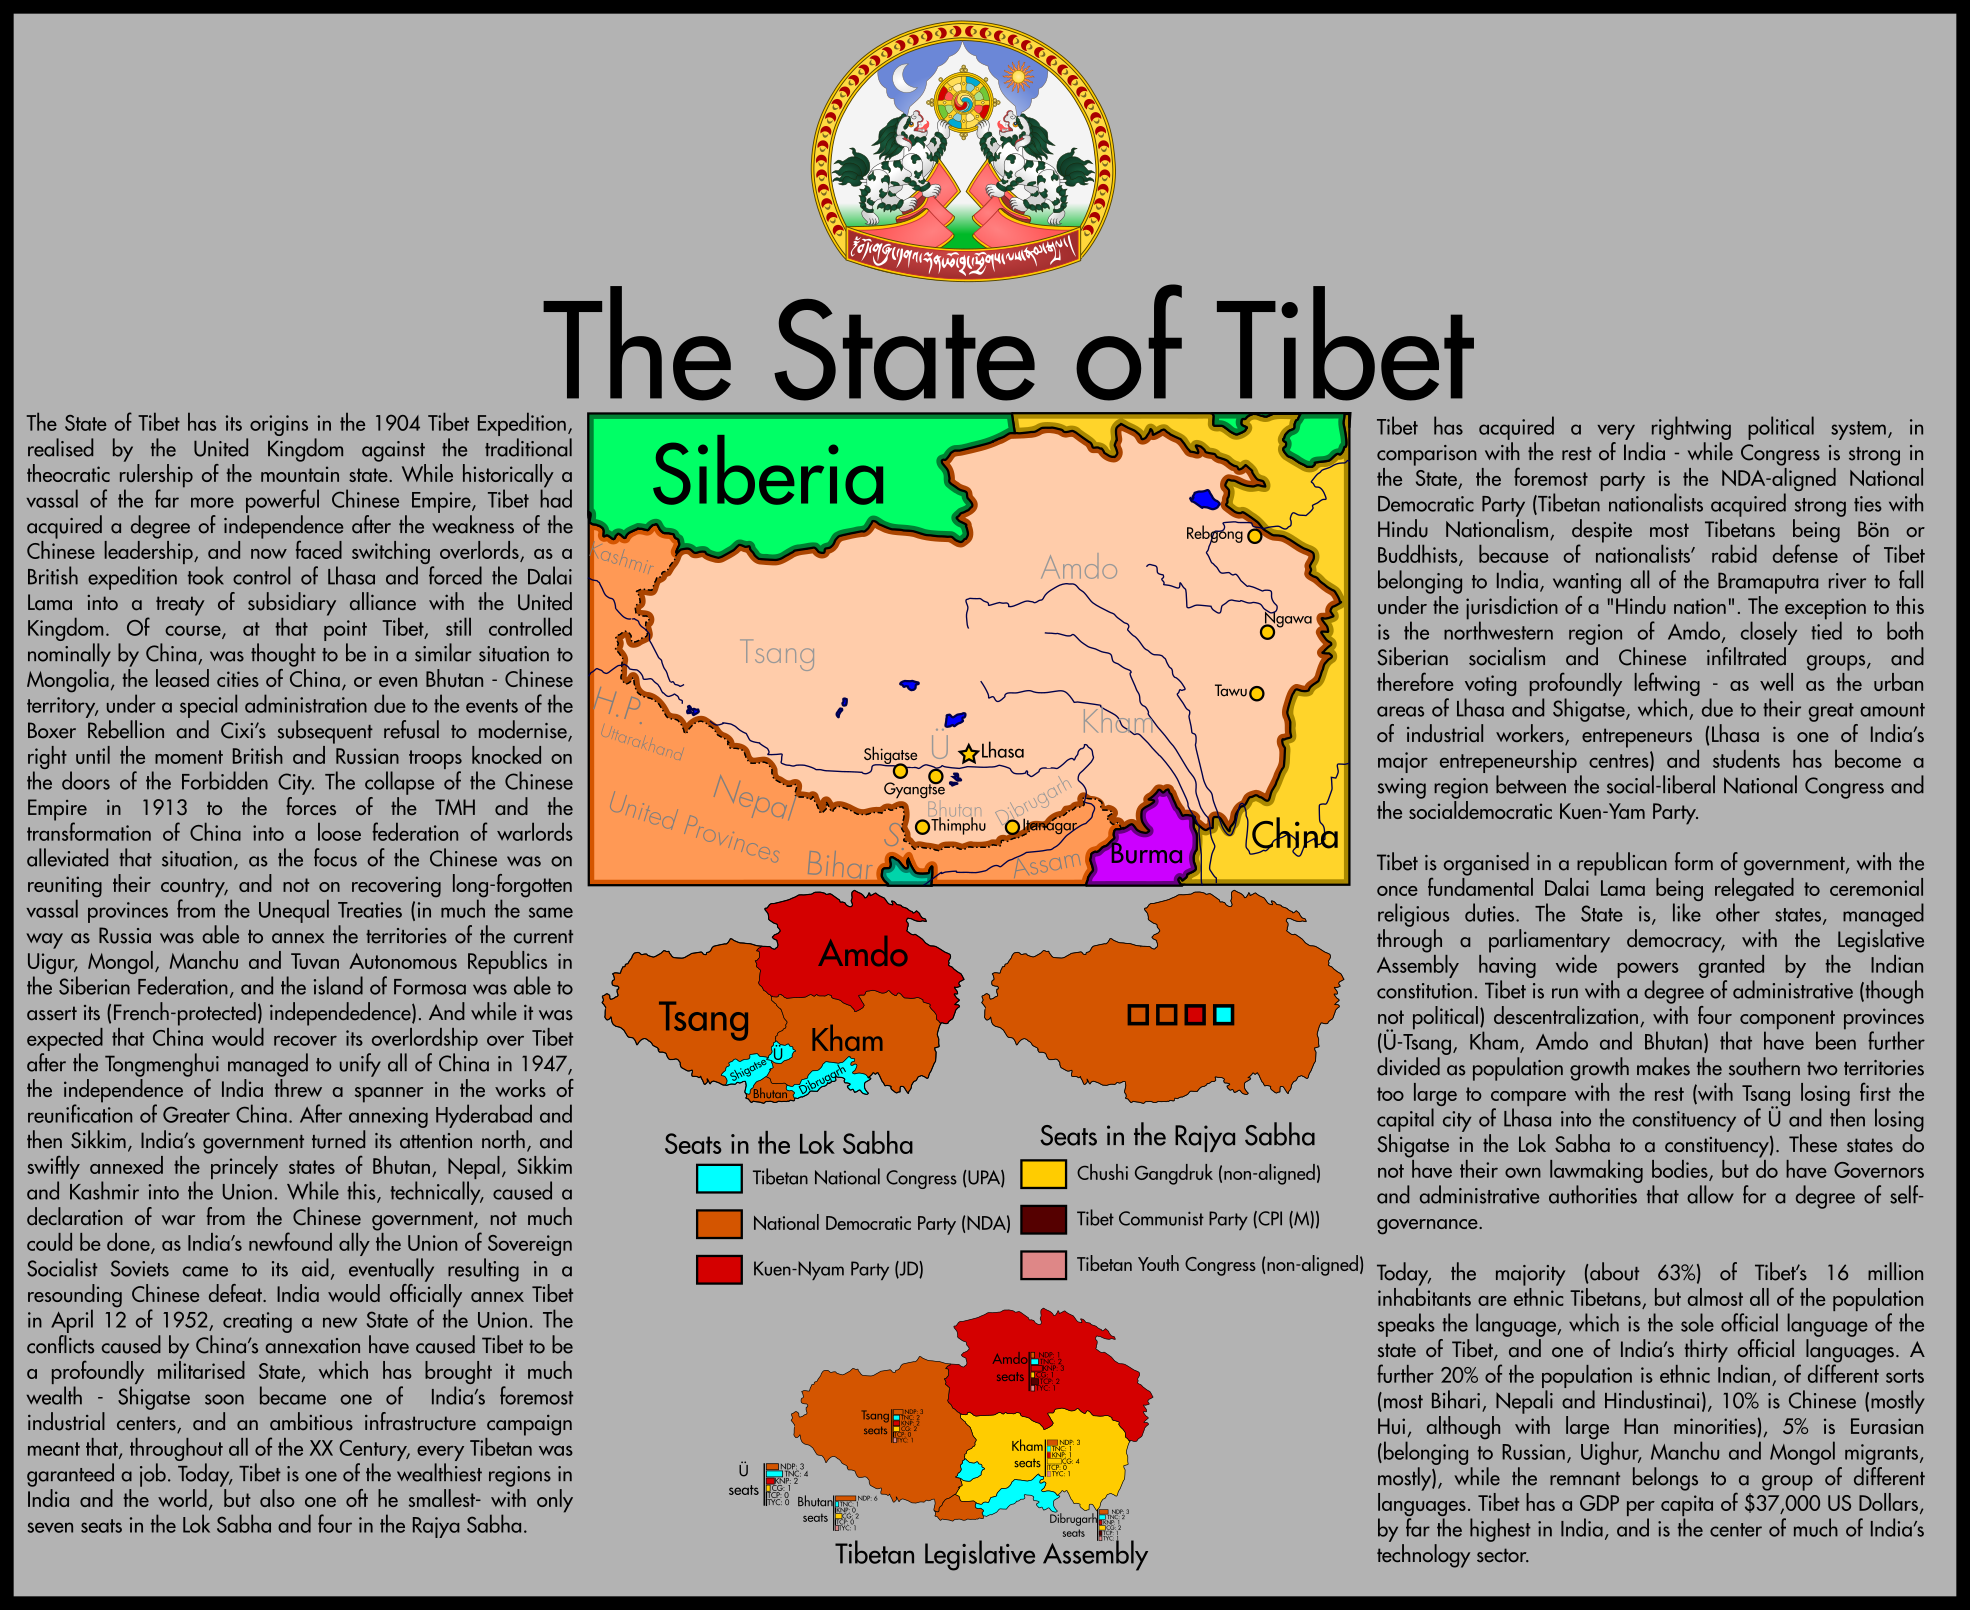 tibet_motf2_by_fed42-dc981ij.png